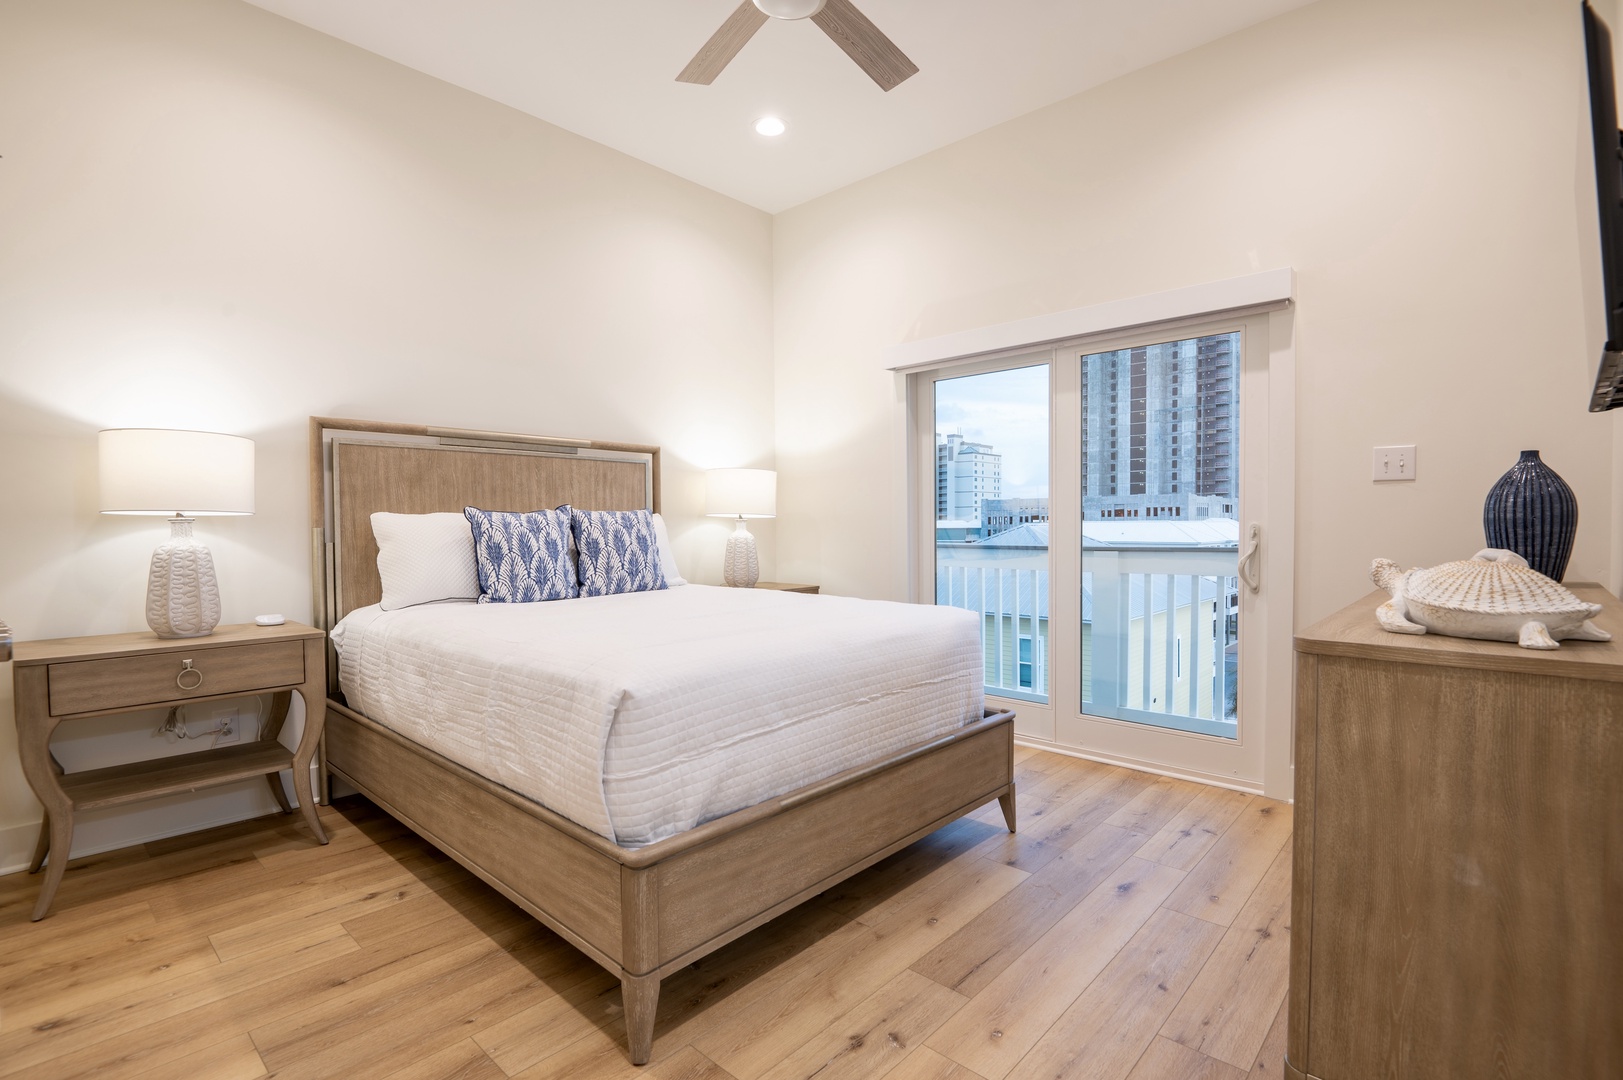 4th floor - Bedroom 7 with Queen bed, Smart TV, balcony, and en-suite